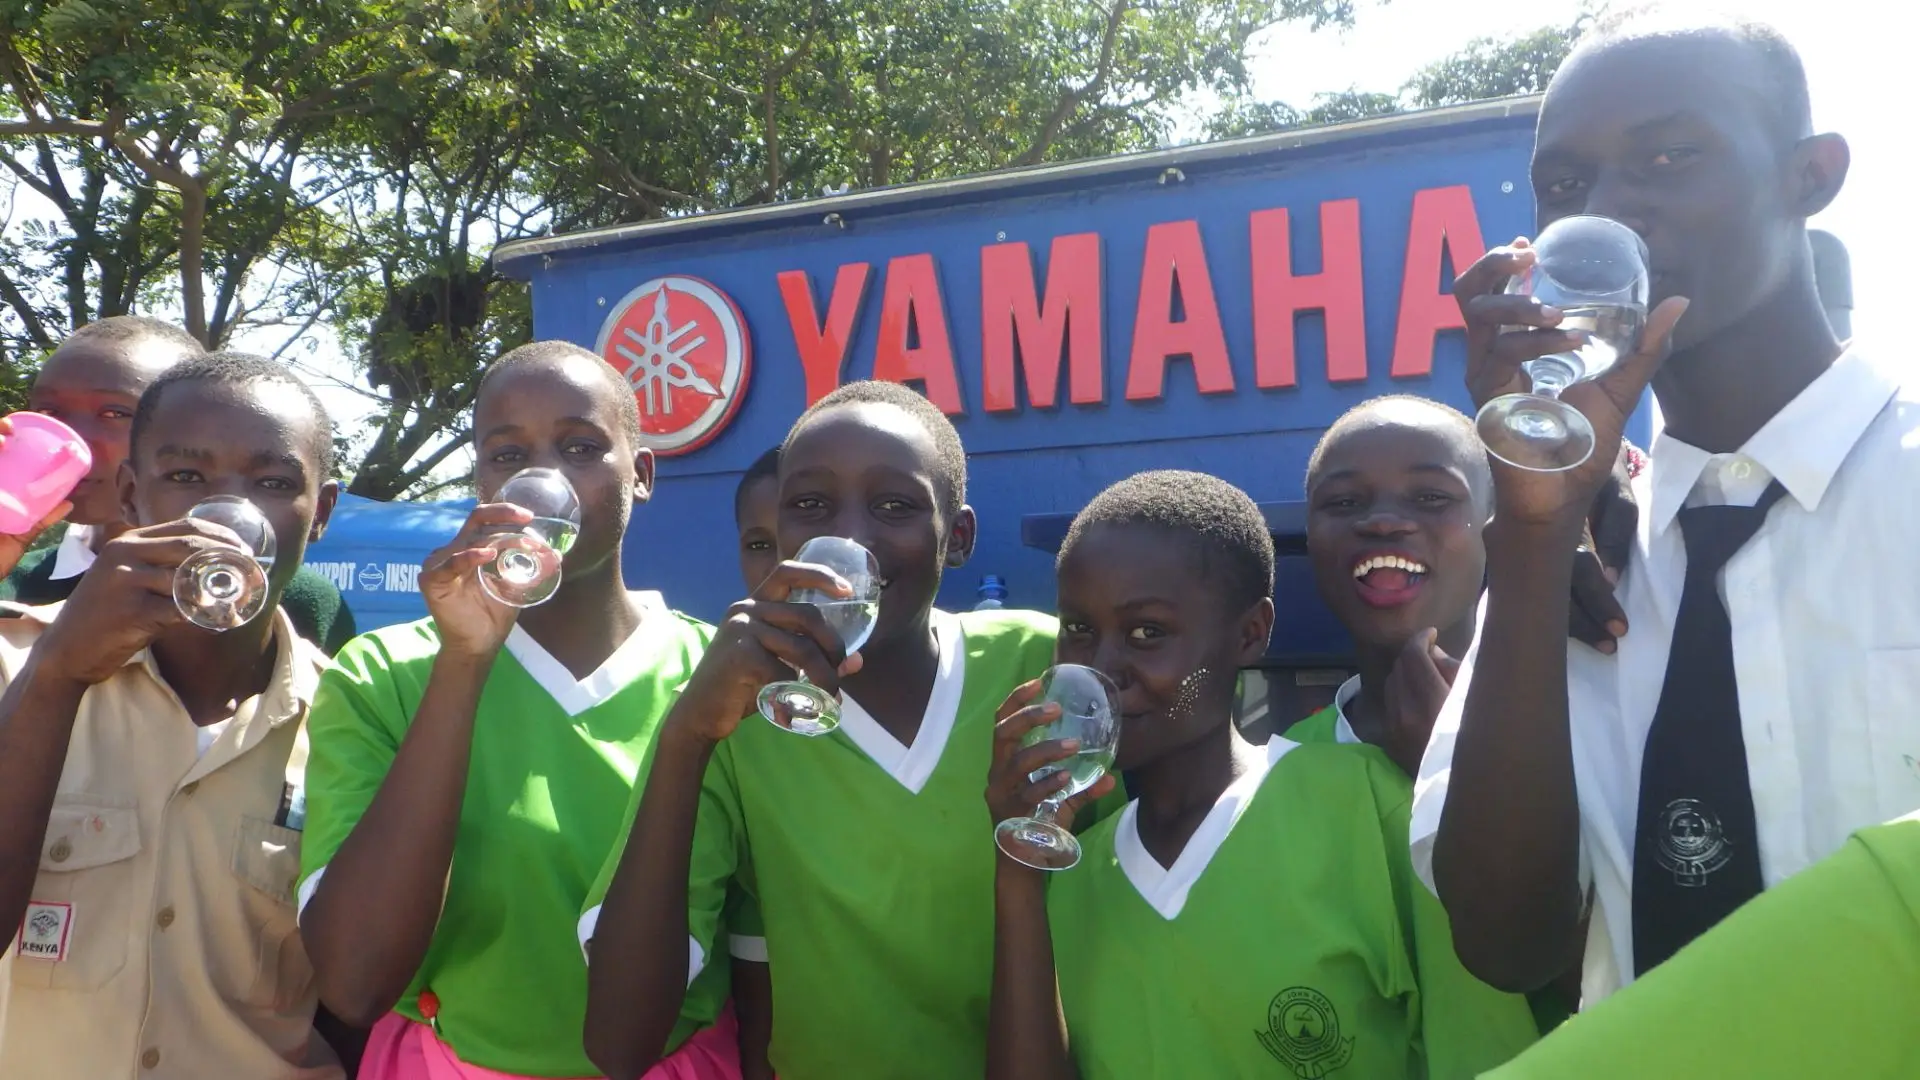 een waterzuiveringssysteem van yamaha motor kondigt nieuw leven aan voor mensen in opkomende markten dfile